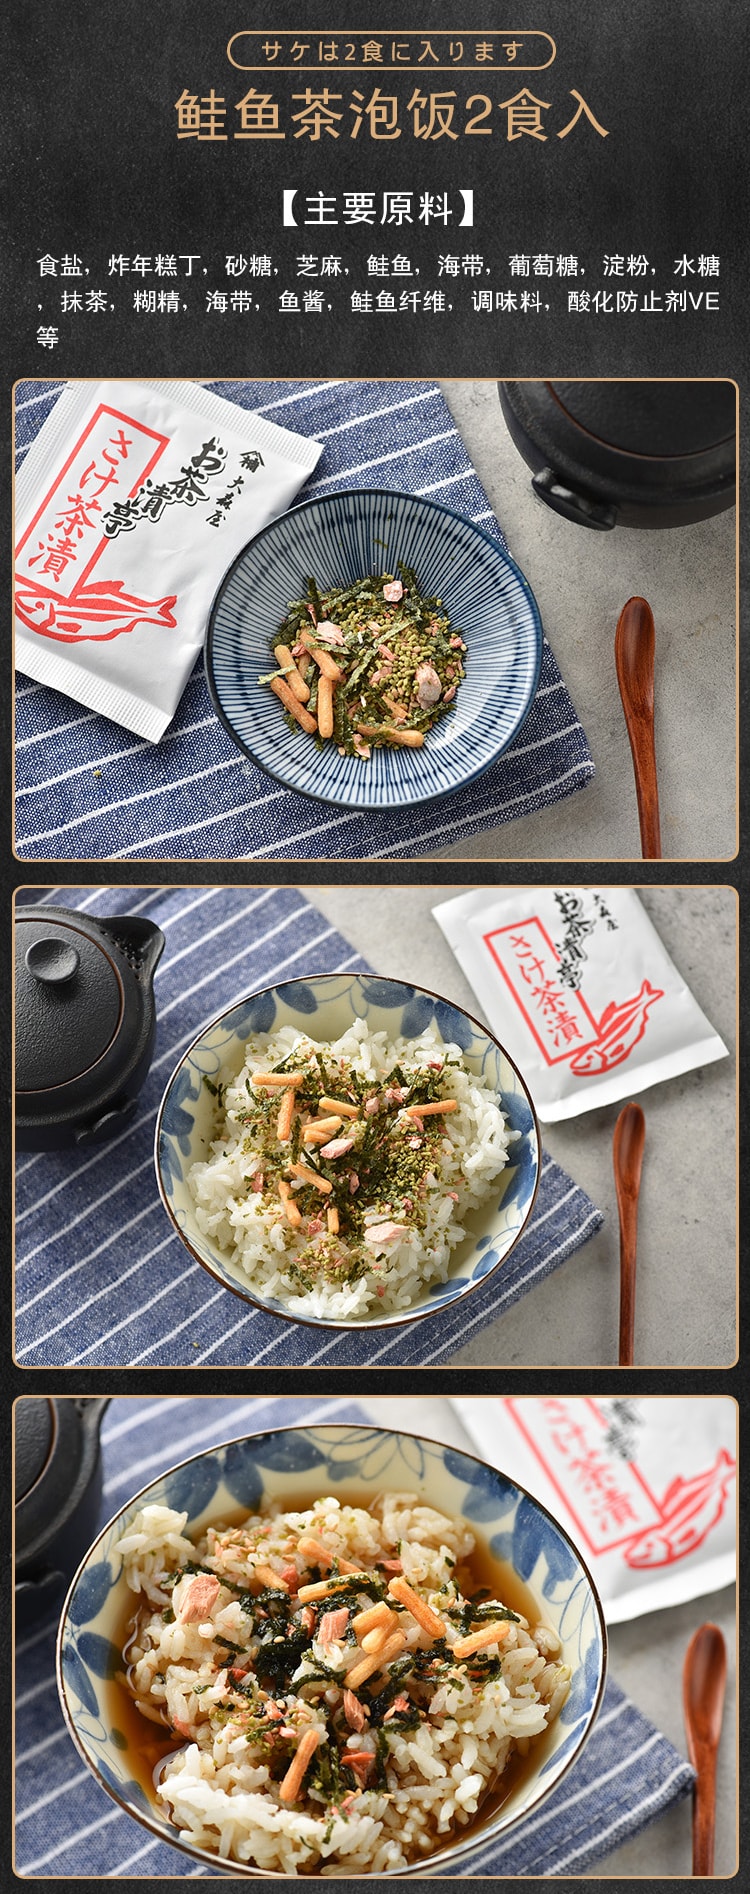 日本大森屋OHMORIYA鲑鱼茶泡饭 日式梅子海苔茶泡饭料包4味10袋 50g